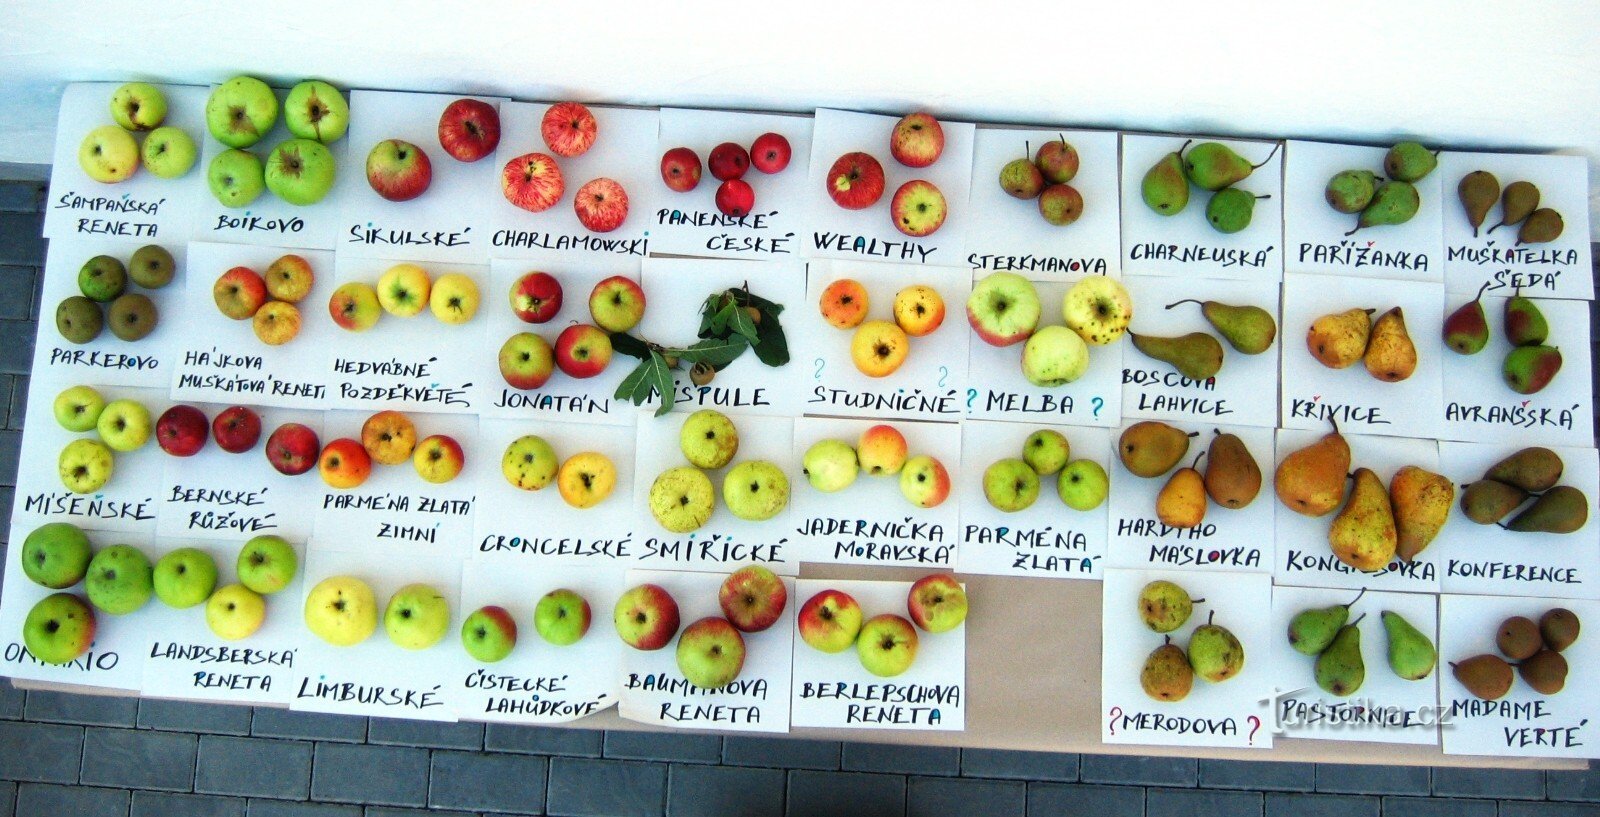 Sidras de Hostětín são feitas a partir de uma mistura de variedades de maçã branca dos Cárpatos, jejic